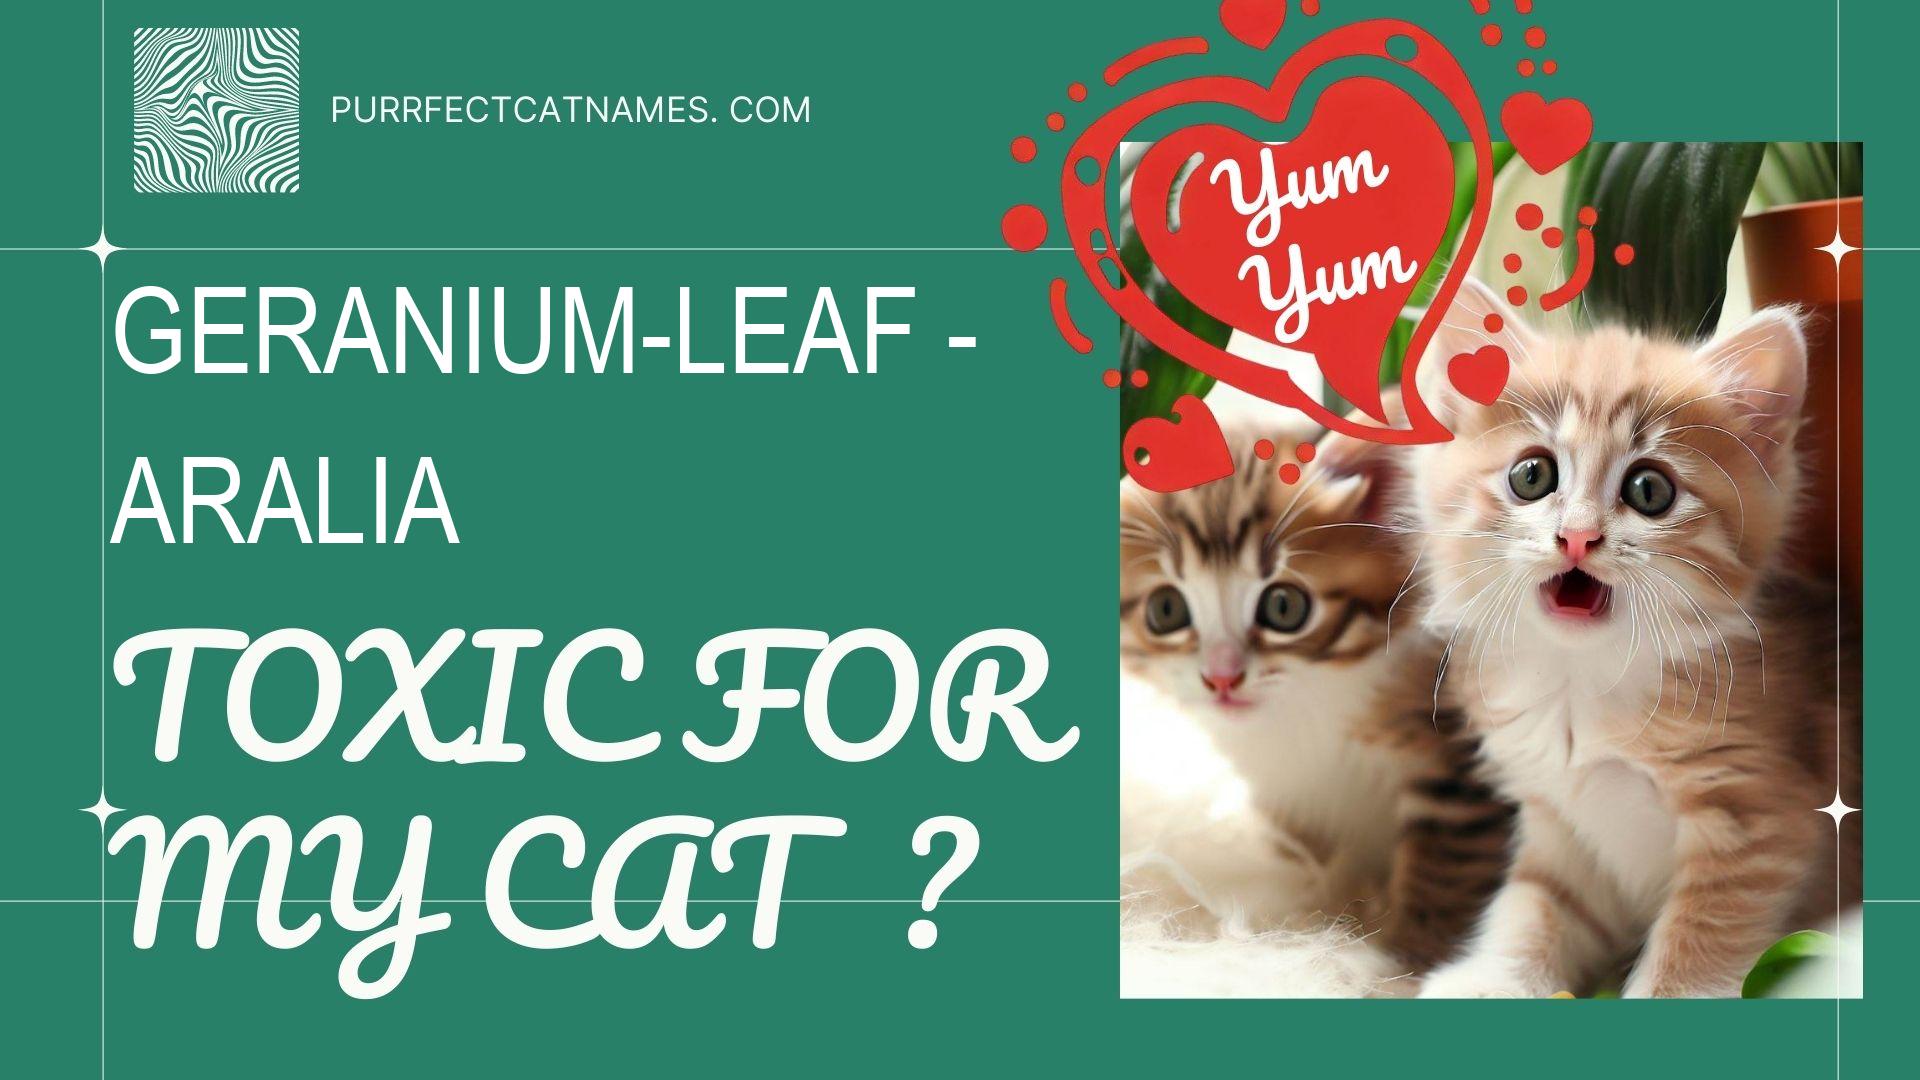 IsGeranium-Leaf Aralia plant toxic for your cat